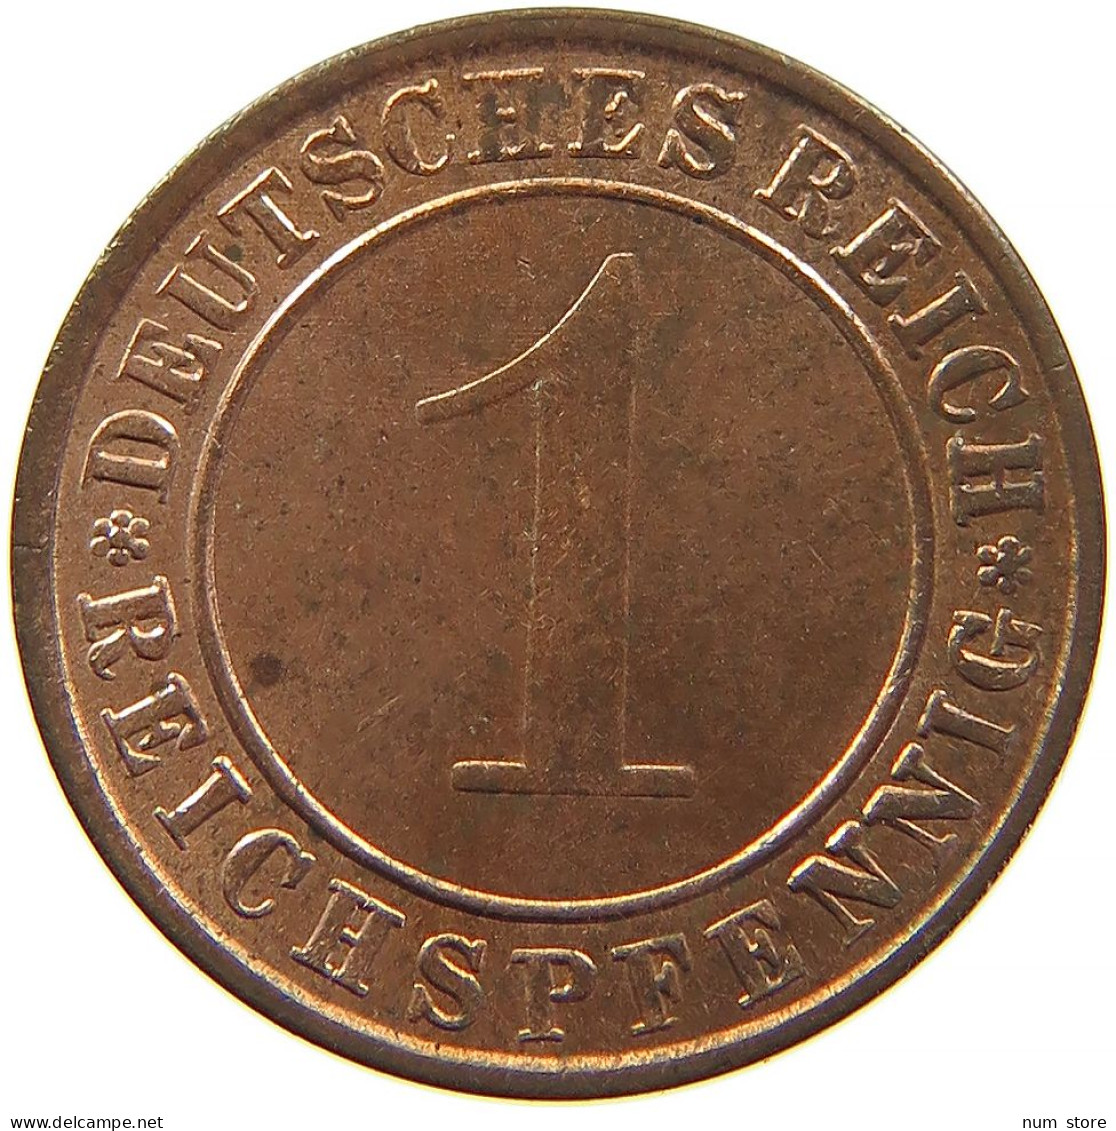 GERMANY 1 REICHSPFENNIG 1935 A #t030 0341 - 1 Reichspfennig